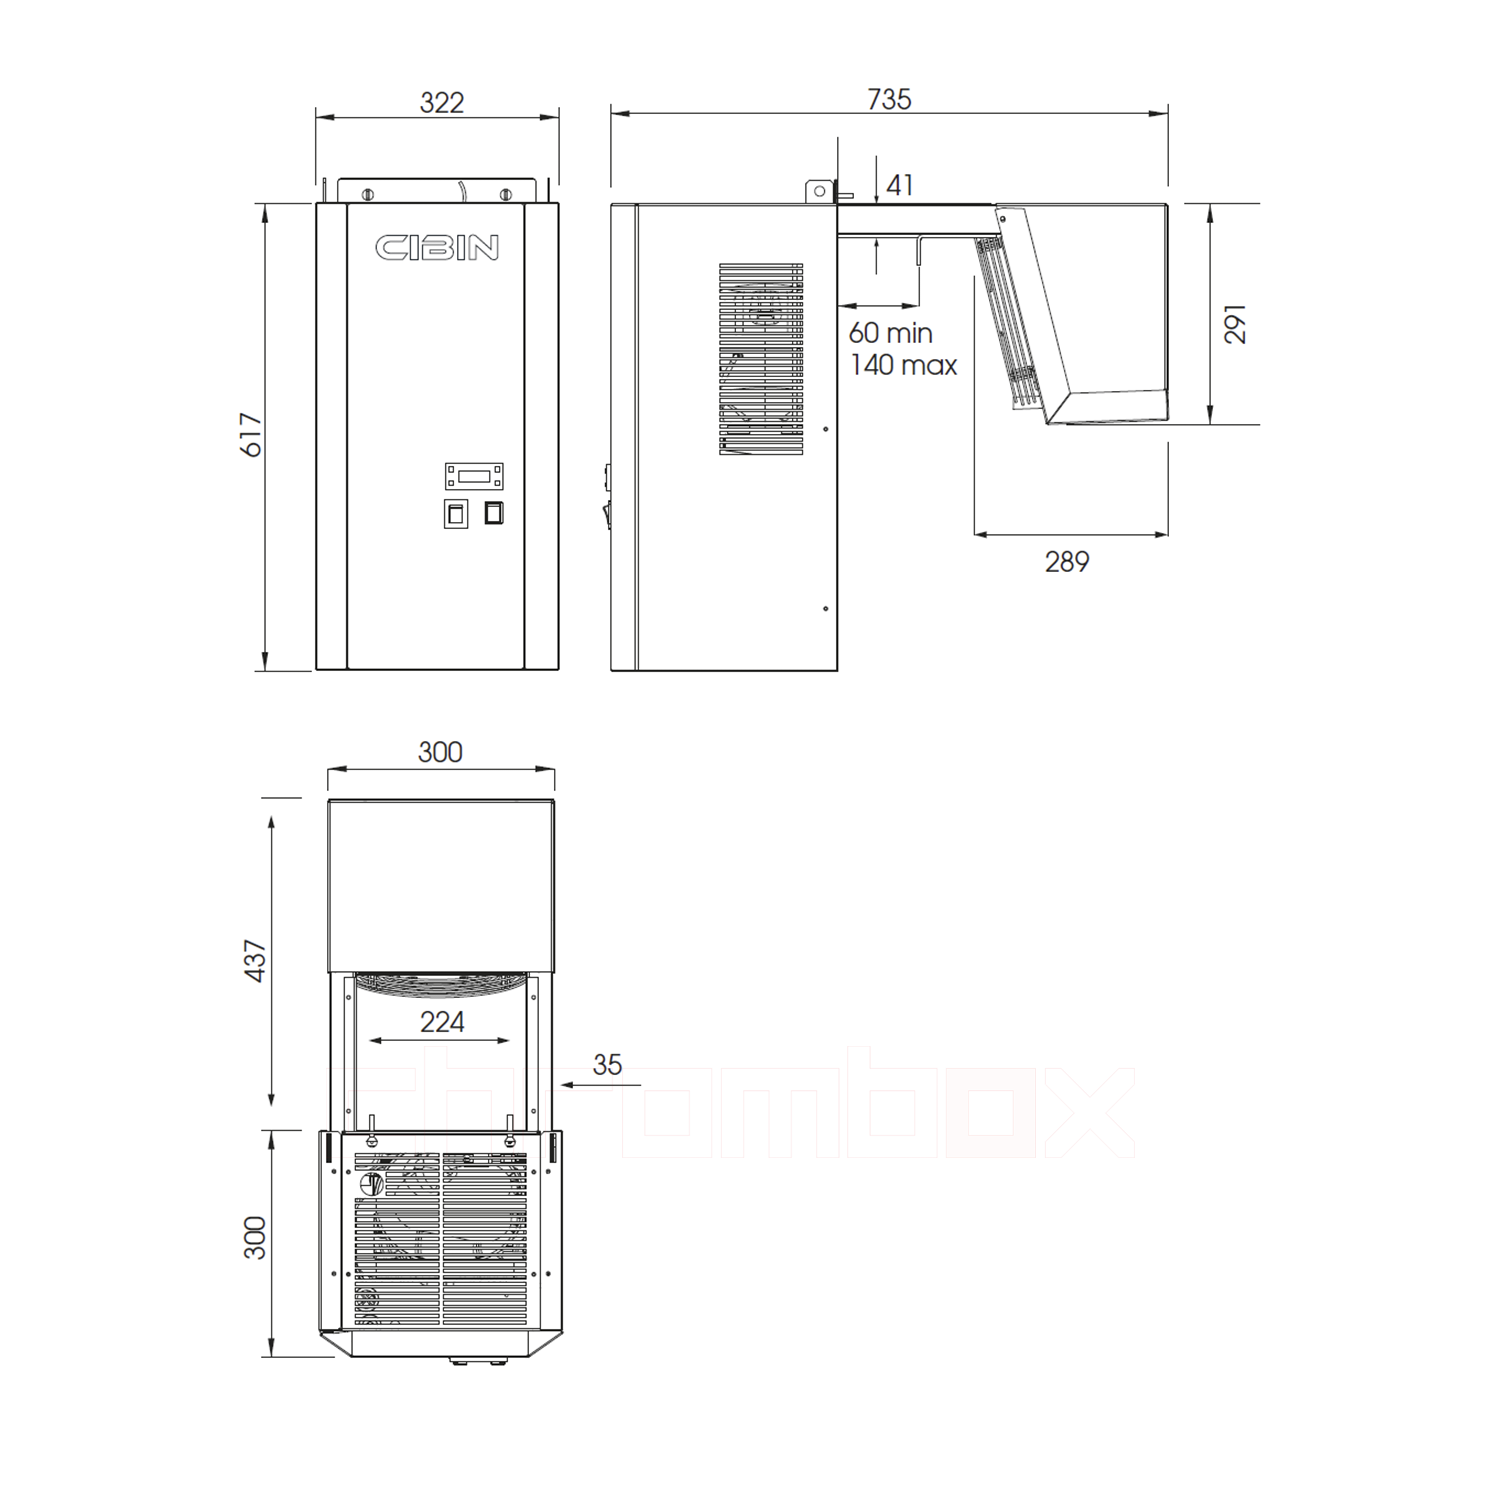 Technische Zeichnung zu Huckepack-Kühlaggregat Cibin LAIKA bis 2 m3, steckerfertig